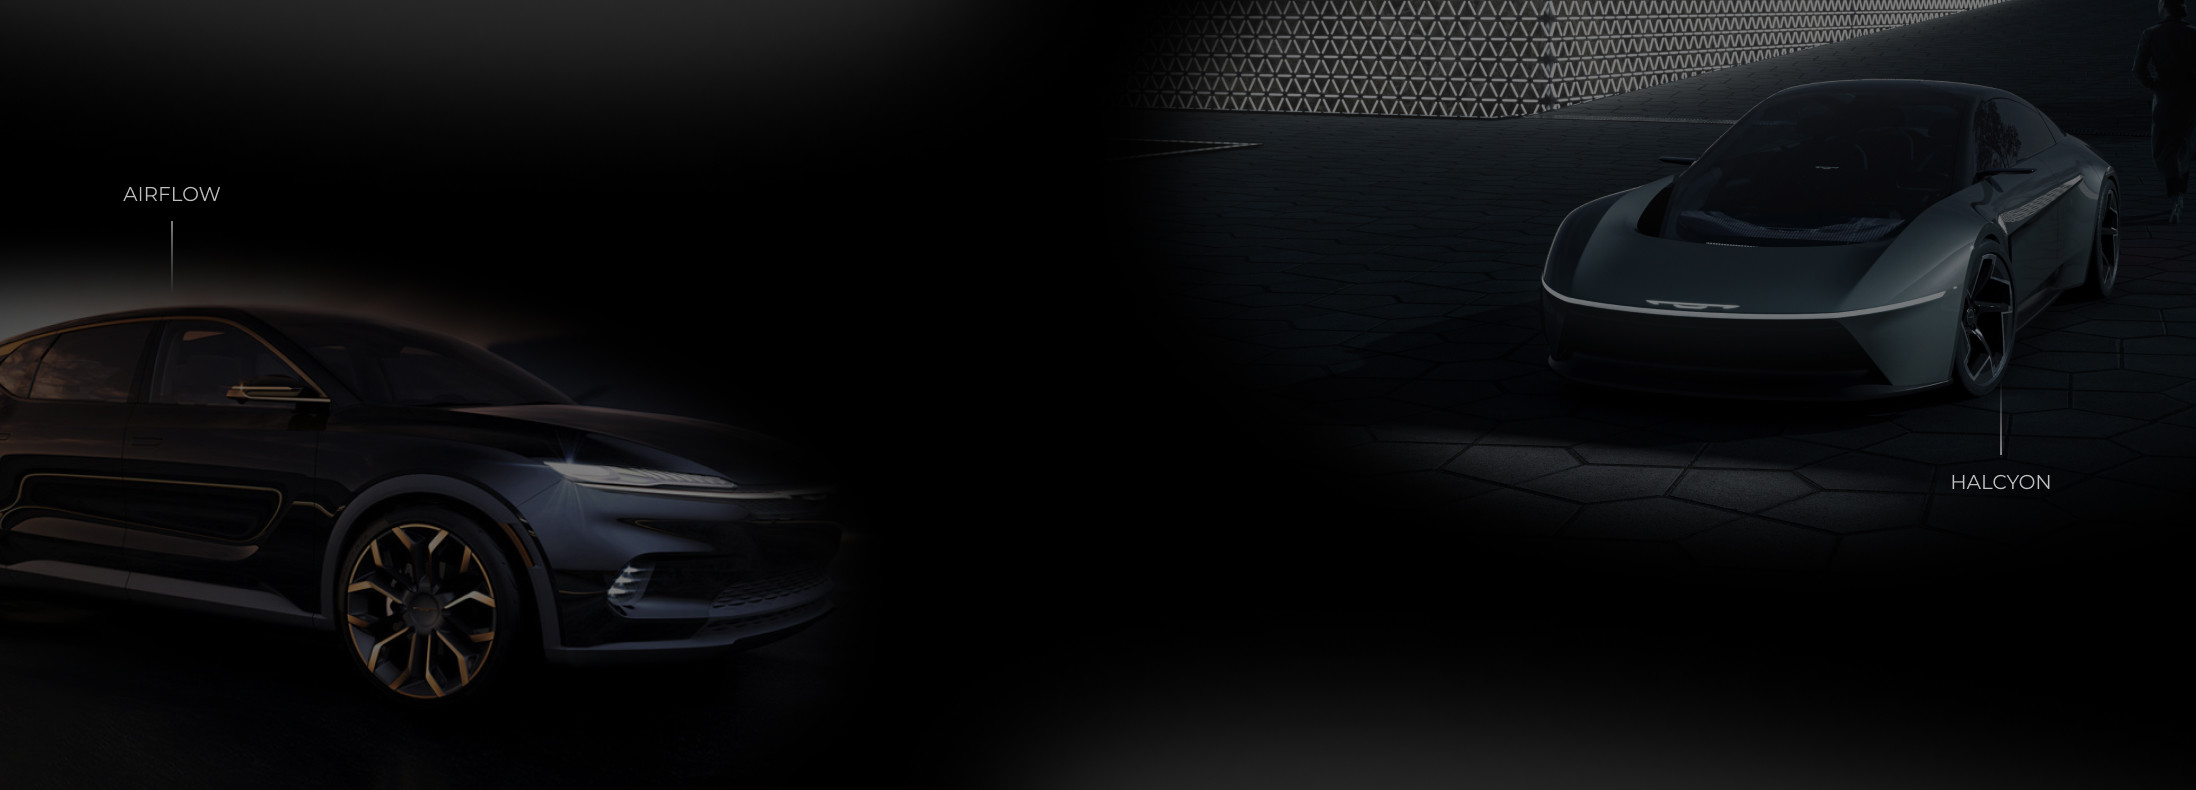 Vues de profil du Chrysler Airflow sur le côté gauche et des véhicules Halcyon Concept sur la droite dans un décor sombre.